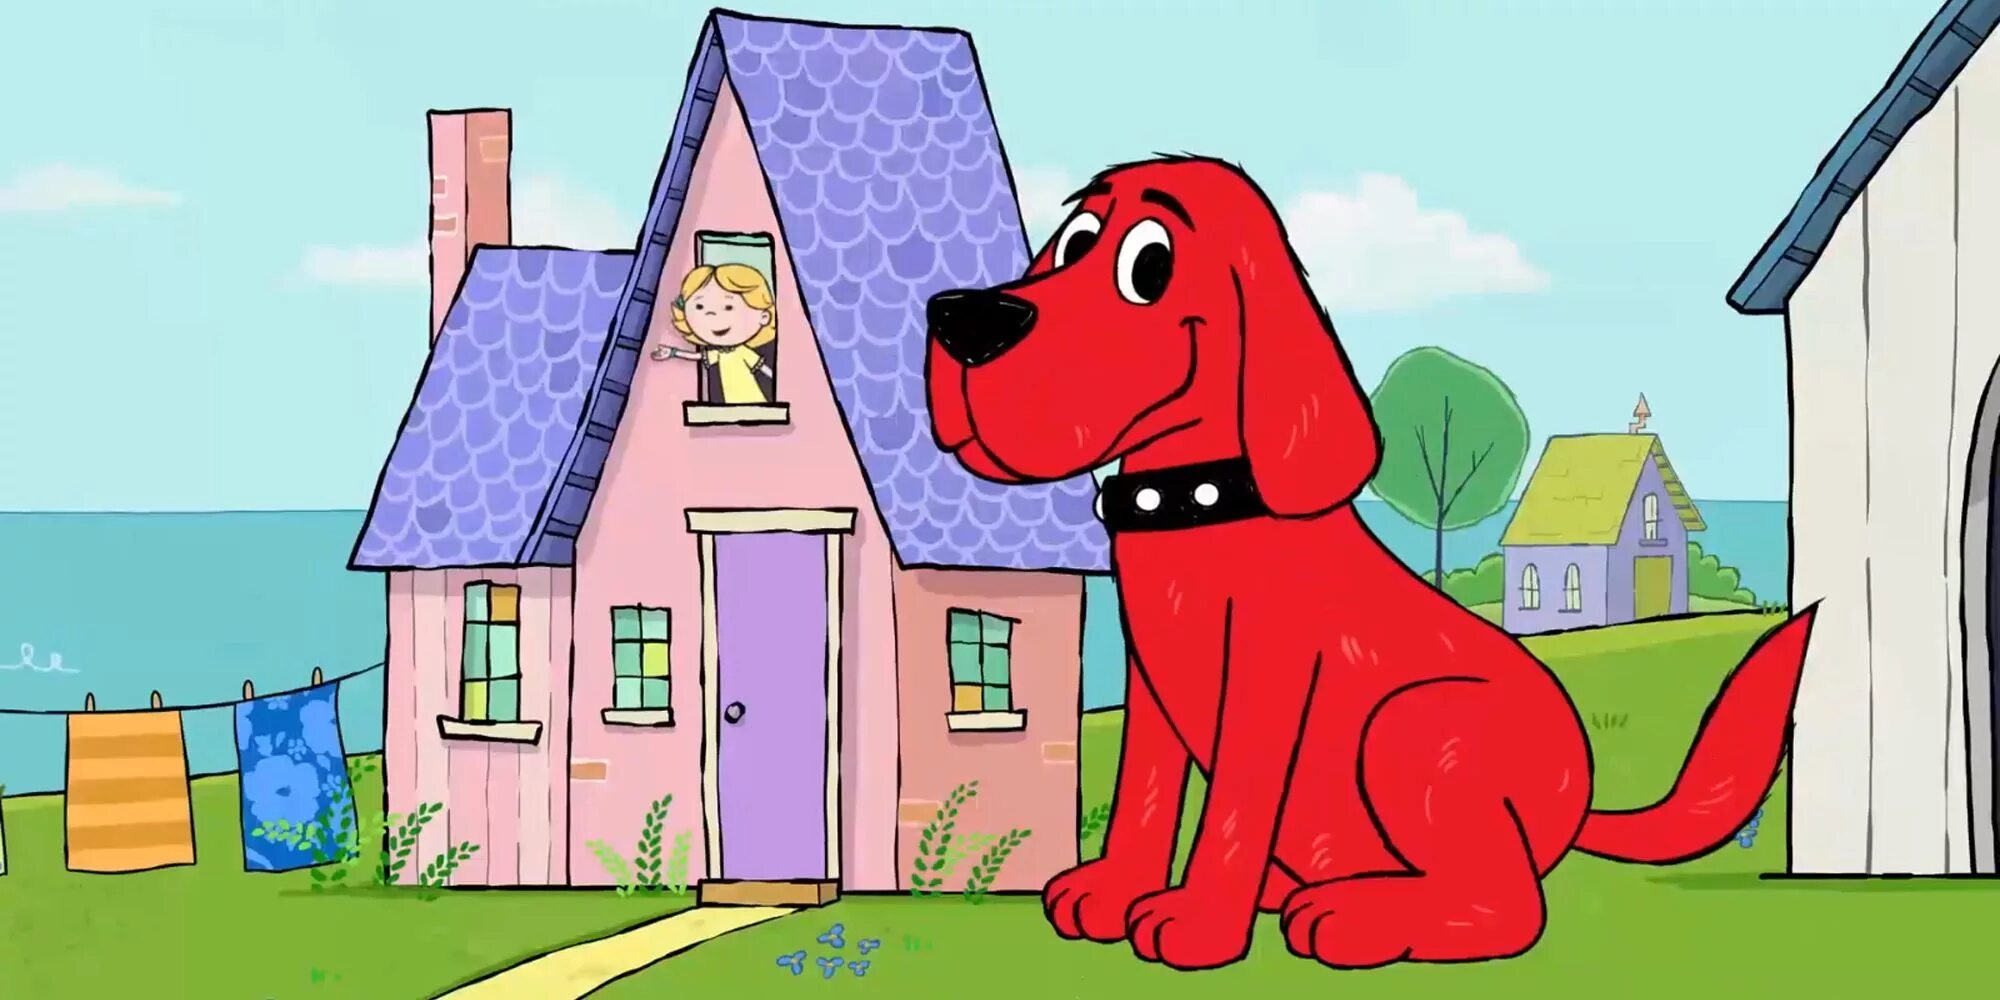 Большой красный клиффорд. Болбшойкраснйпесклиффорд. Красный пёс Клиффорд. Клиффорд большая красная собака.